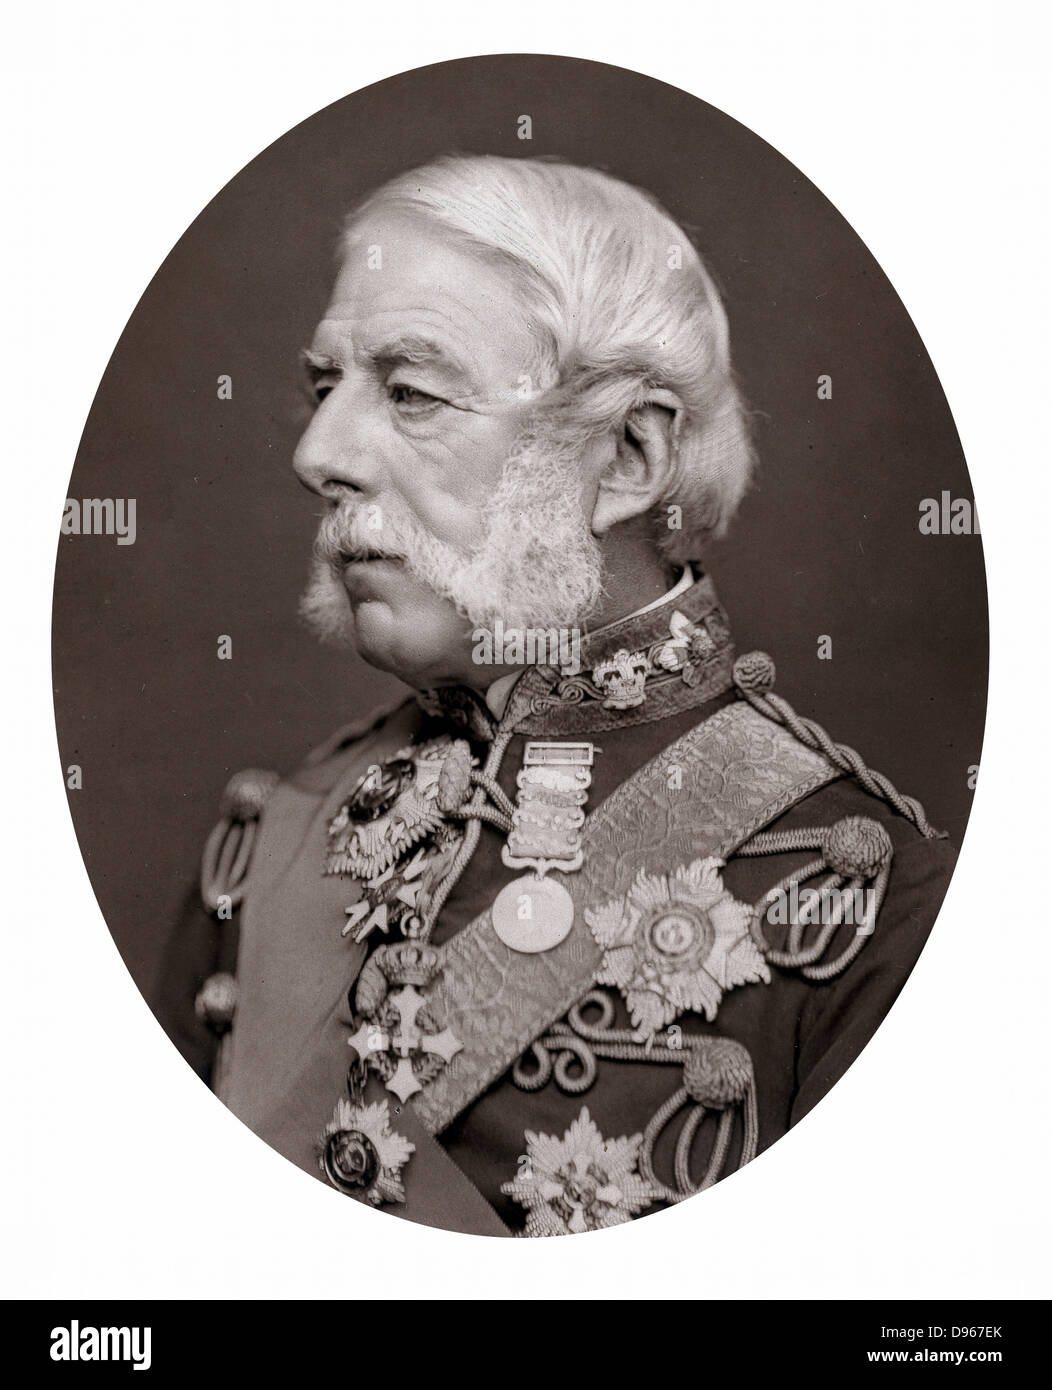 Richard Airey, Baron Airey (1803-1881) soldat anglais ; du quartier-maître général de l'armée de Crimée 1854-1855 ; gouverneur de Gibraltar 1865-1870. Photographie publiée en 1875. Woodburytype Banque D'Images